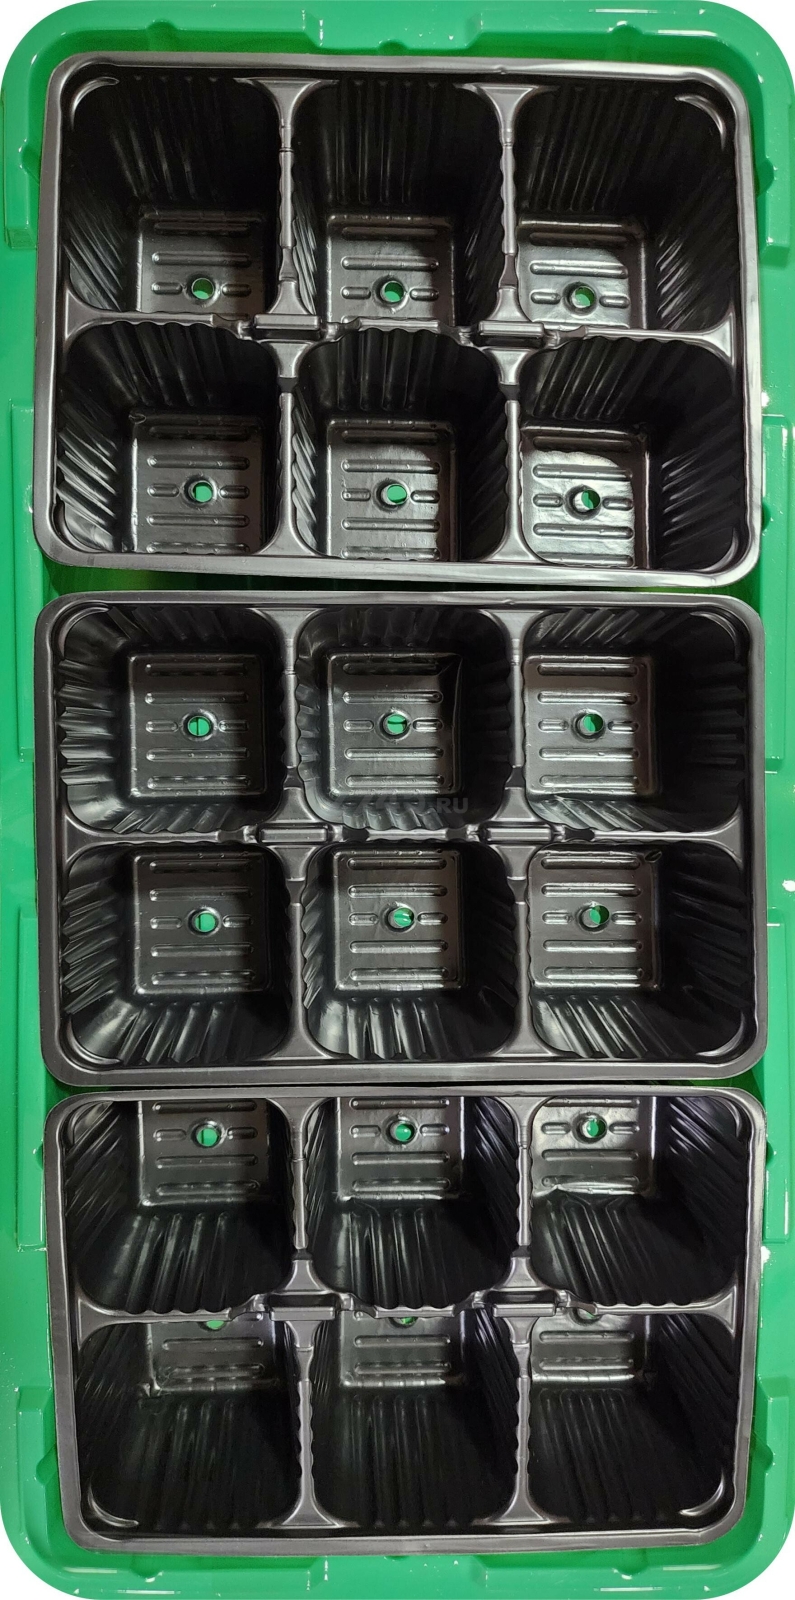 Мини-парник пластмассовый 18 ячеек INGREEN зеленый (ING60011F)